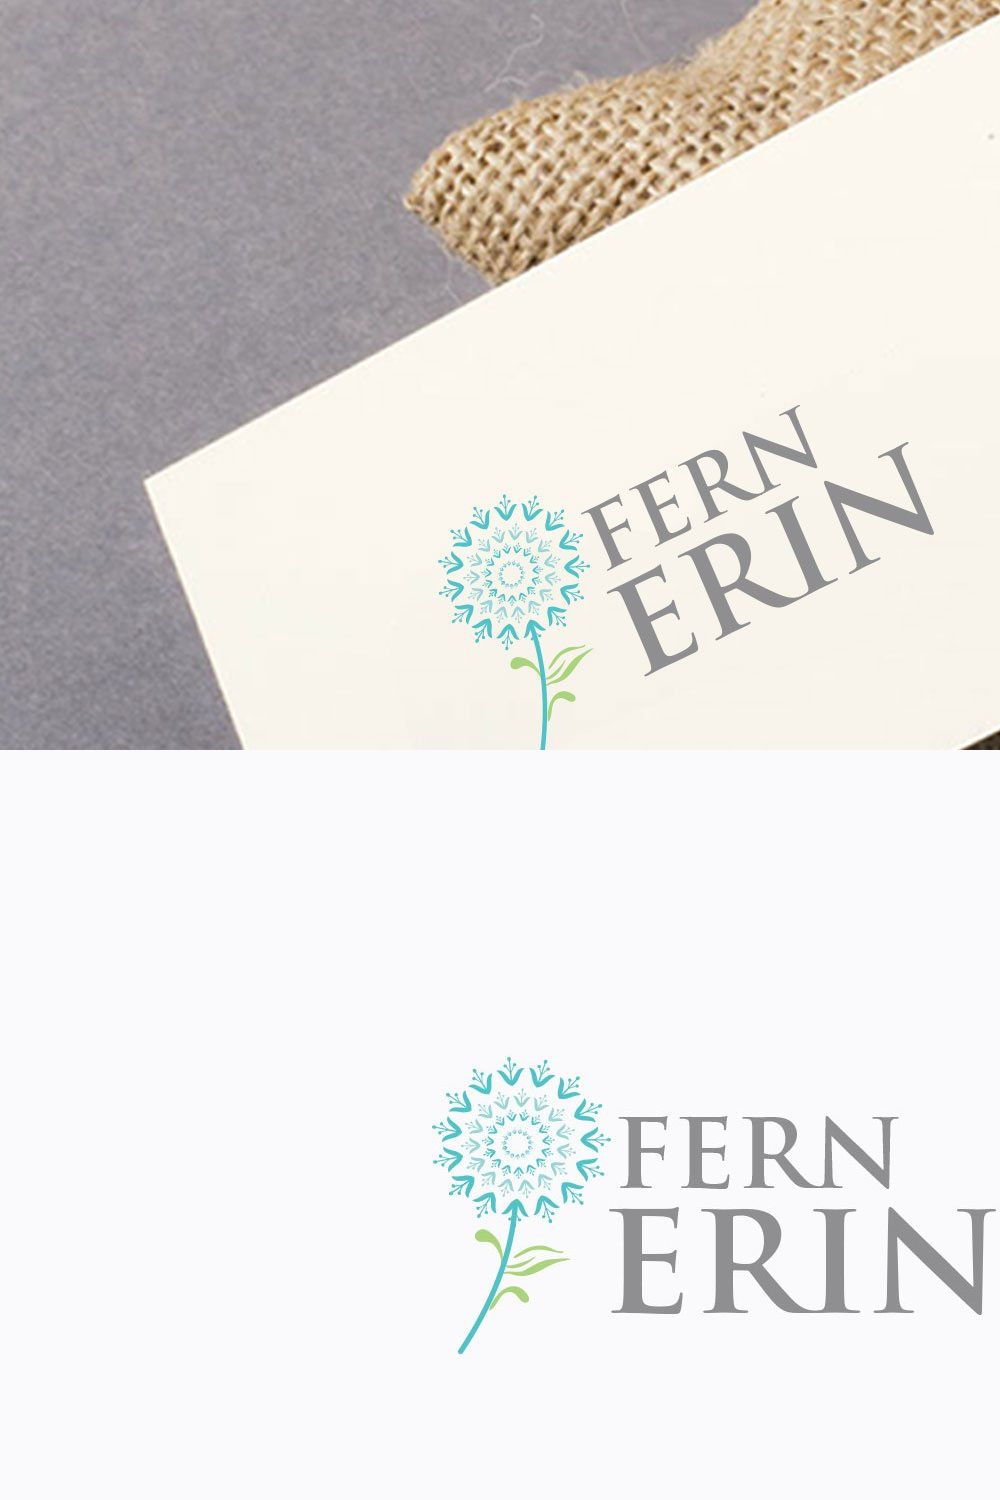 Fern Flower Logo pinterest preview image.